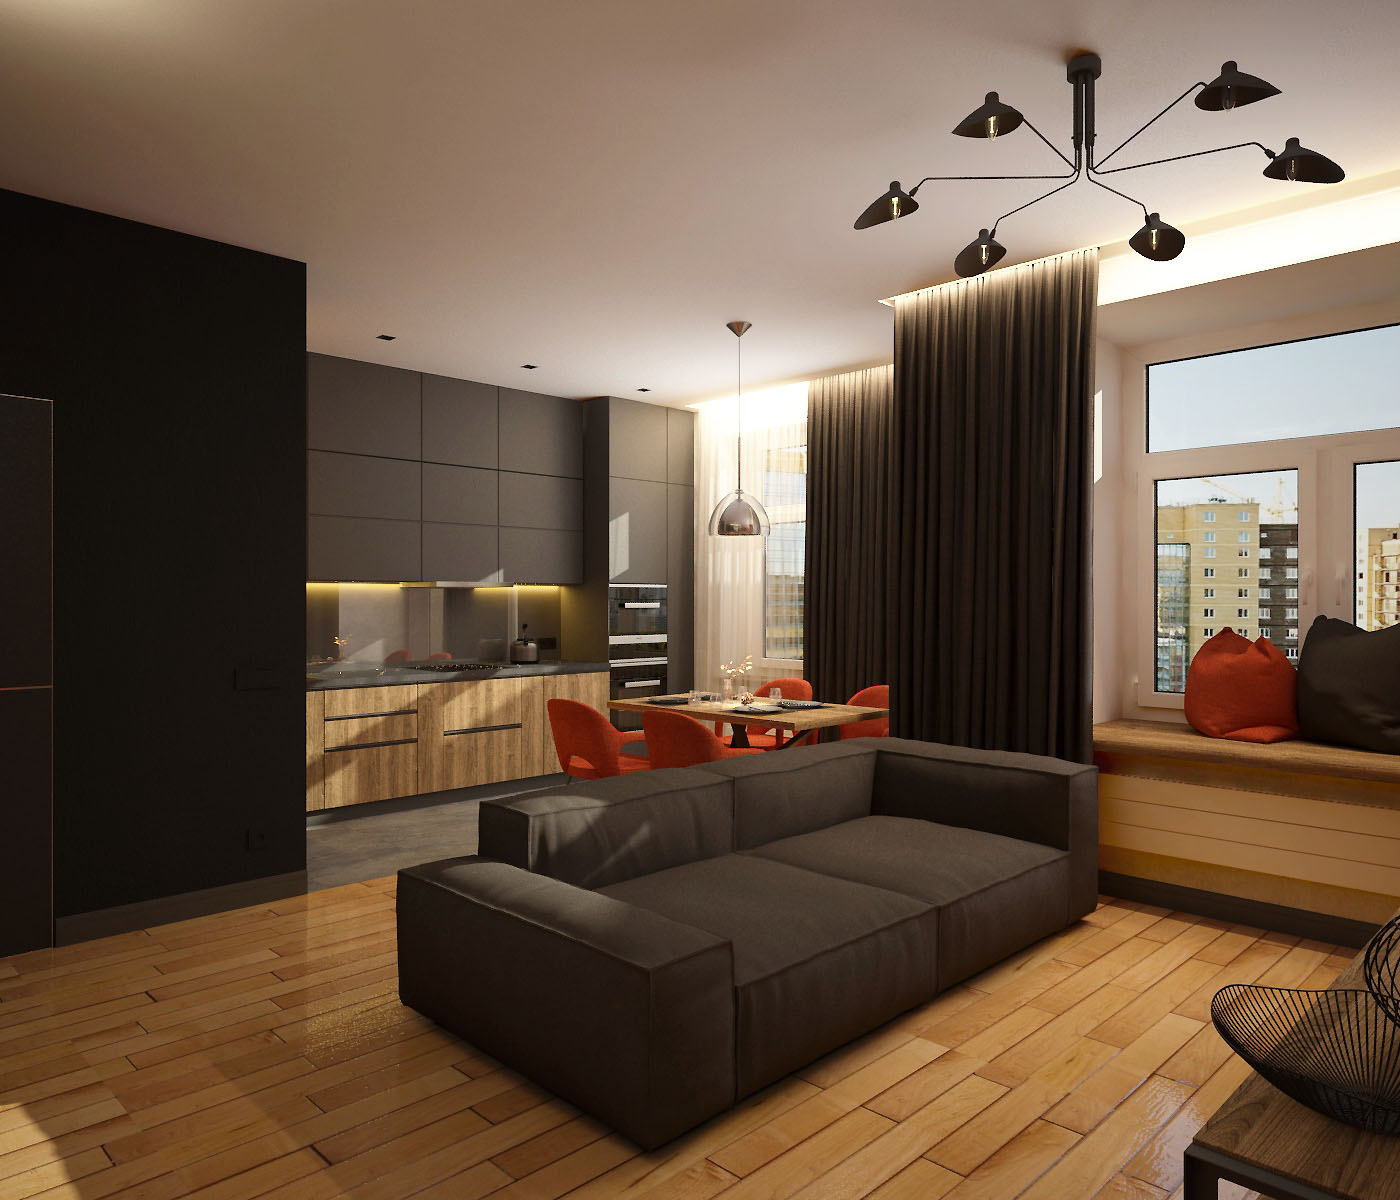 Appartement loft avec des éléments de minimalisme, Tcheliabinsk dans 3d max vray 3.0 image